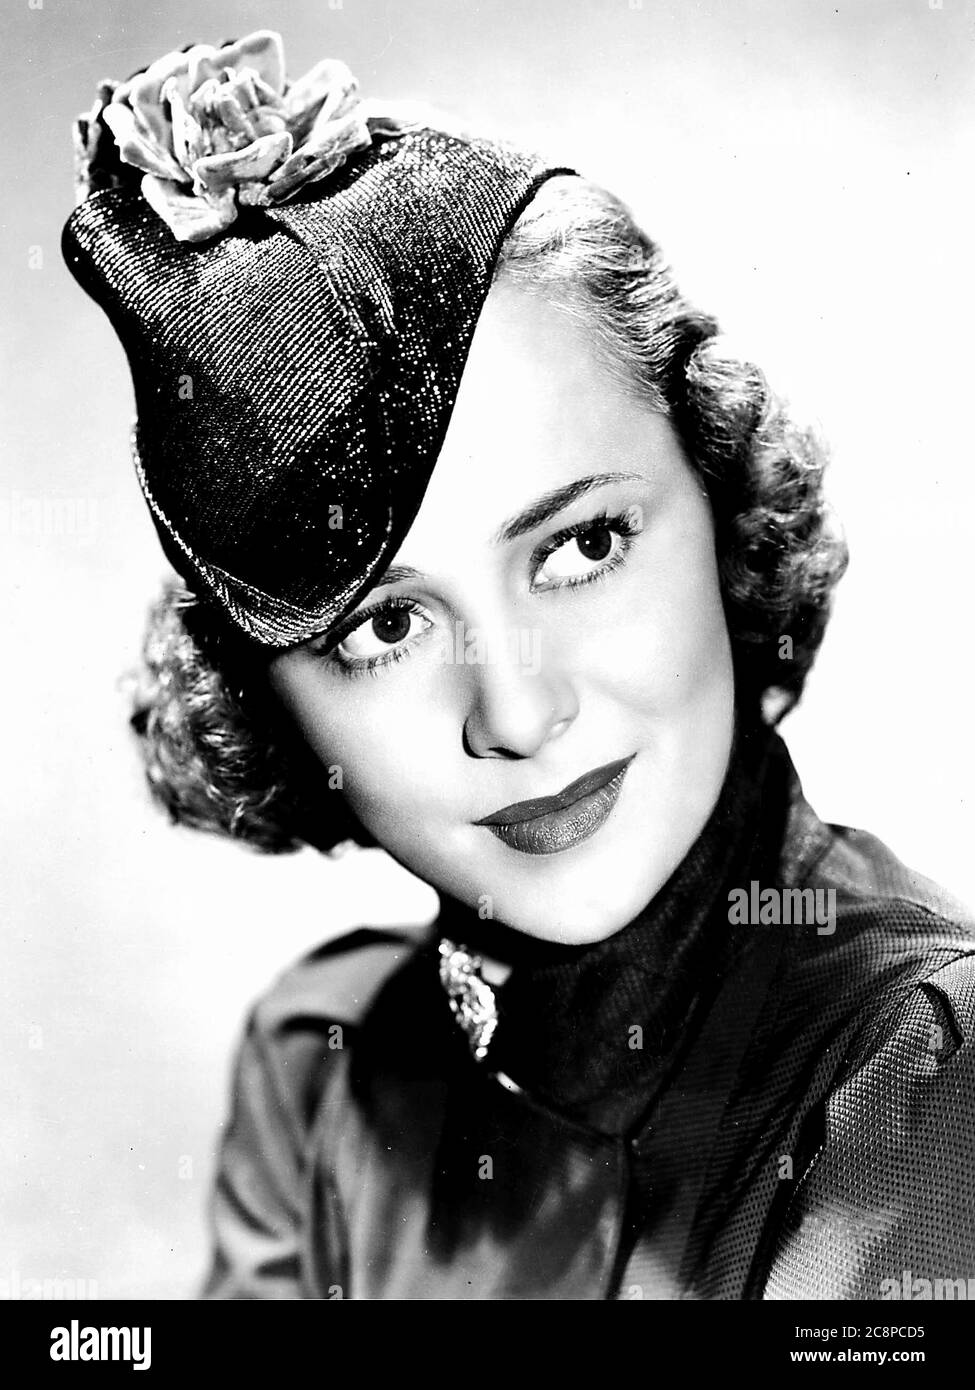 26 luglio 2020: OLIVIA DE HAVILLAND, classica stella di Hollywood e due volte vincitrice del Premio Academy per la migliore attrice, è morto pacificamente nel suo sonno a casa a Parigi, in Francia, sabato. Aveva 104 anni. FILE IMMAGINE RIPRESA IL: Circa 1937: OLIVIA DE HAVILLAND in ''Call IT A Day'' nel 1937. (Immagine di credito: © Globe Photos/ZUMA Wire) Foto Stock